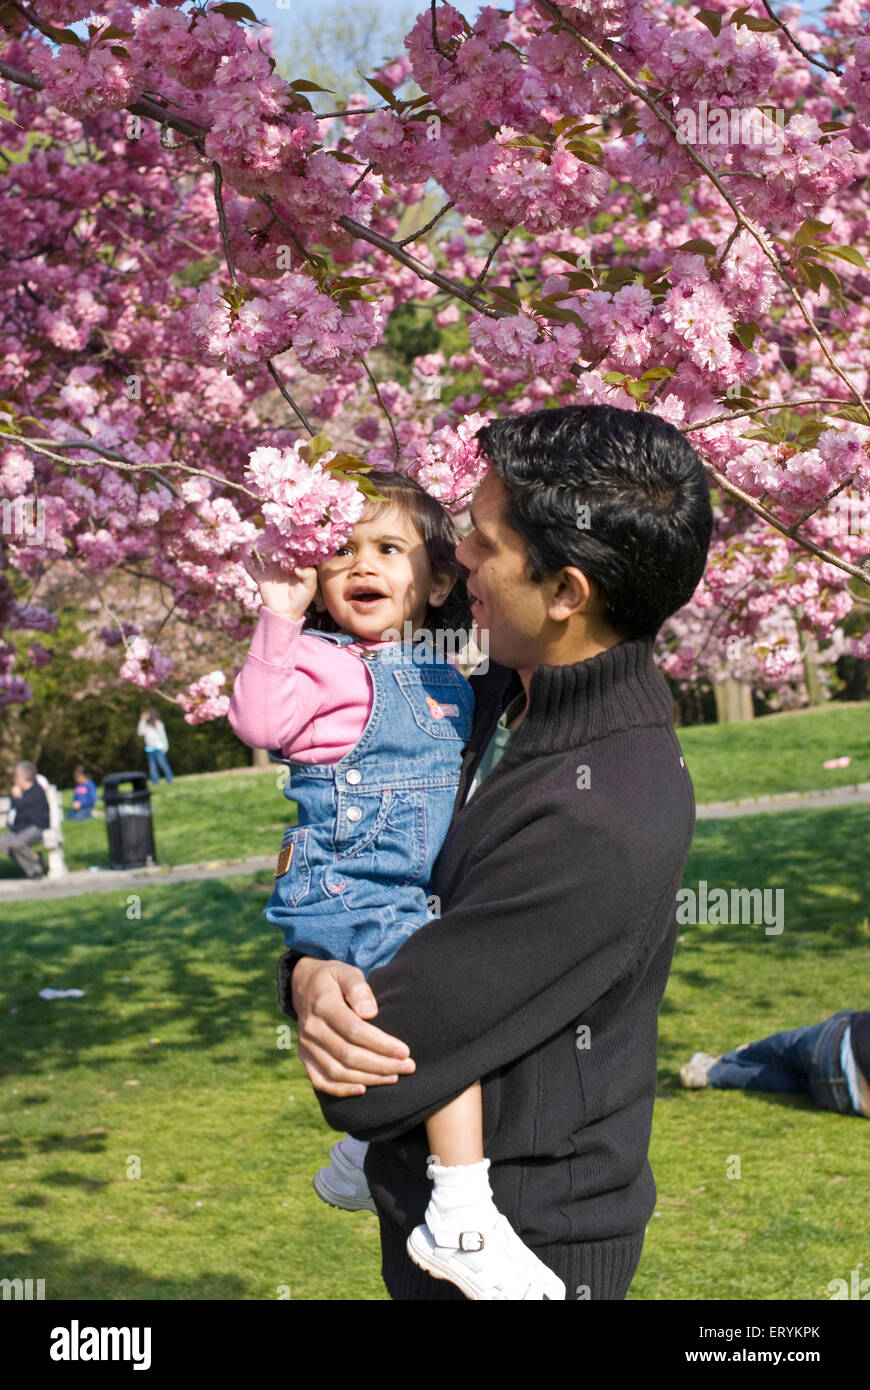 Vater und Tochter, die Blüte der Kirschbäume im Botanischen Garten zu genießen. Brooklyn; New York; USA Vereinigte Staaten von Amerika Stockfoto